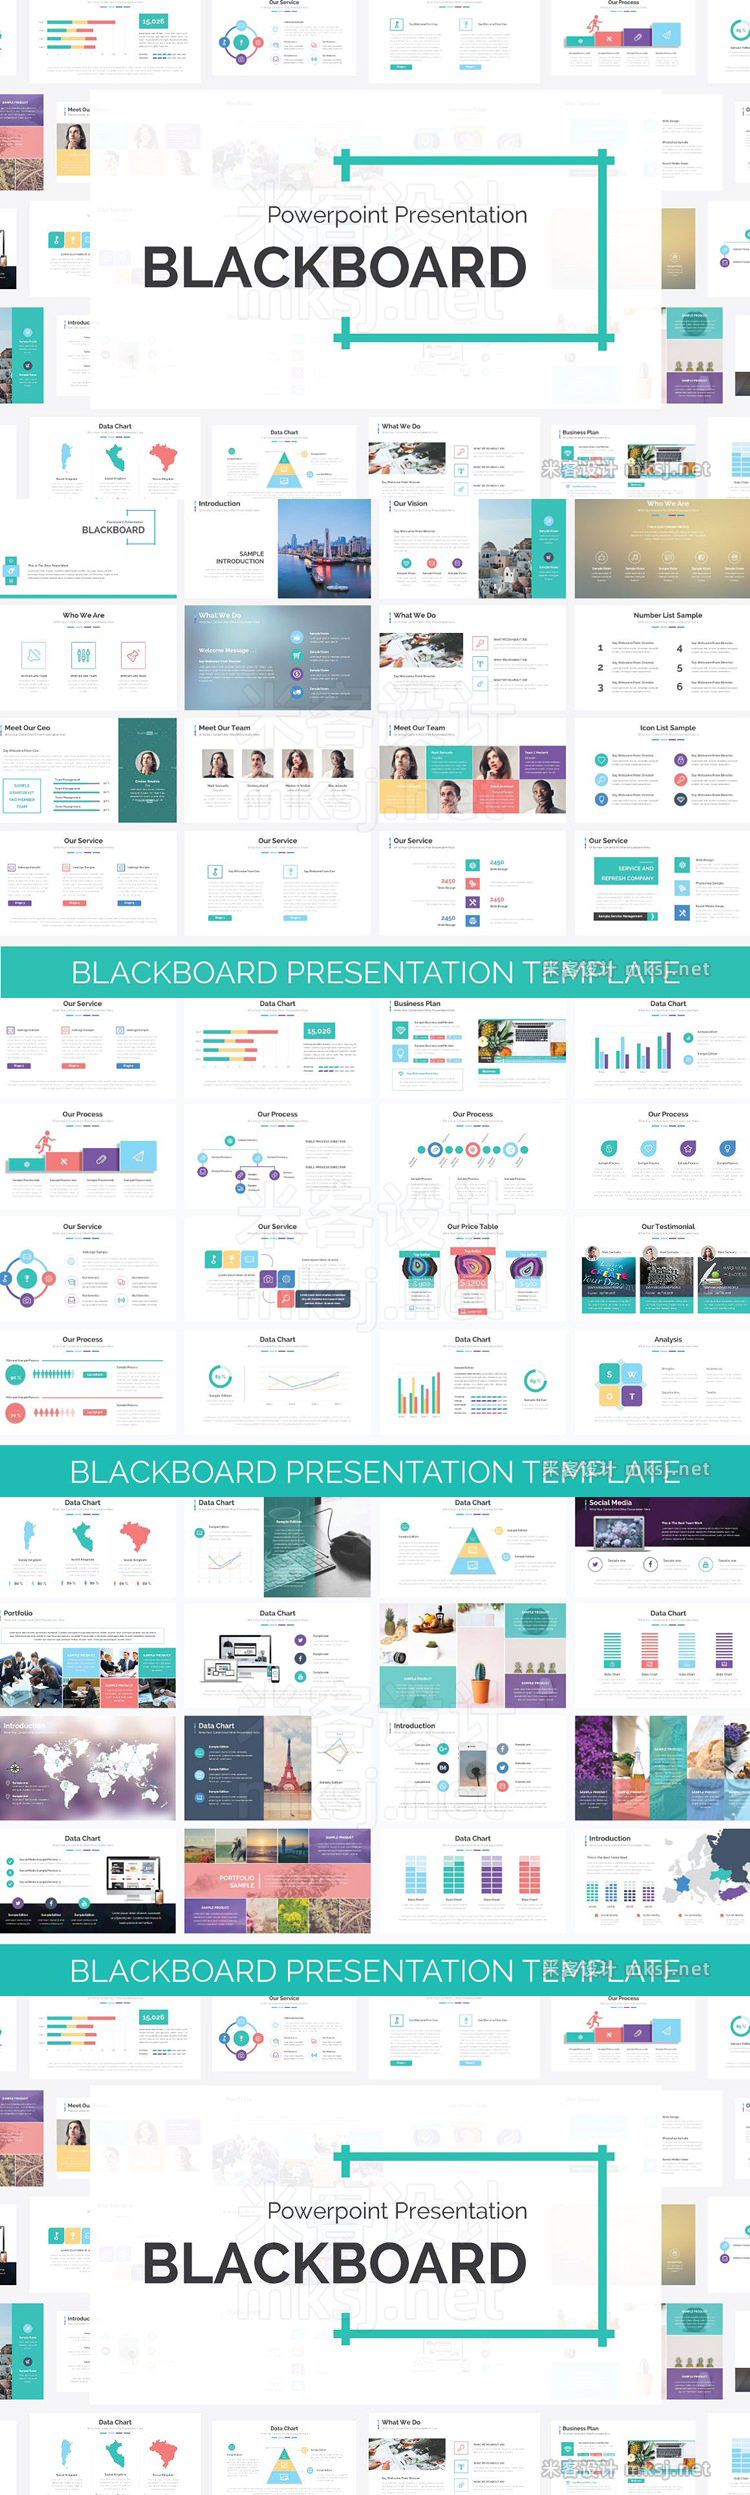 年度报表创意元素简约动态信息图表商务演示PPT模板 Blackboard Presentation Template